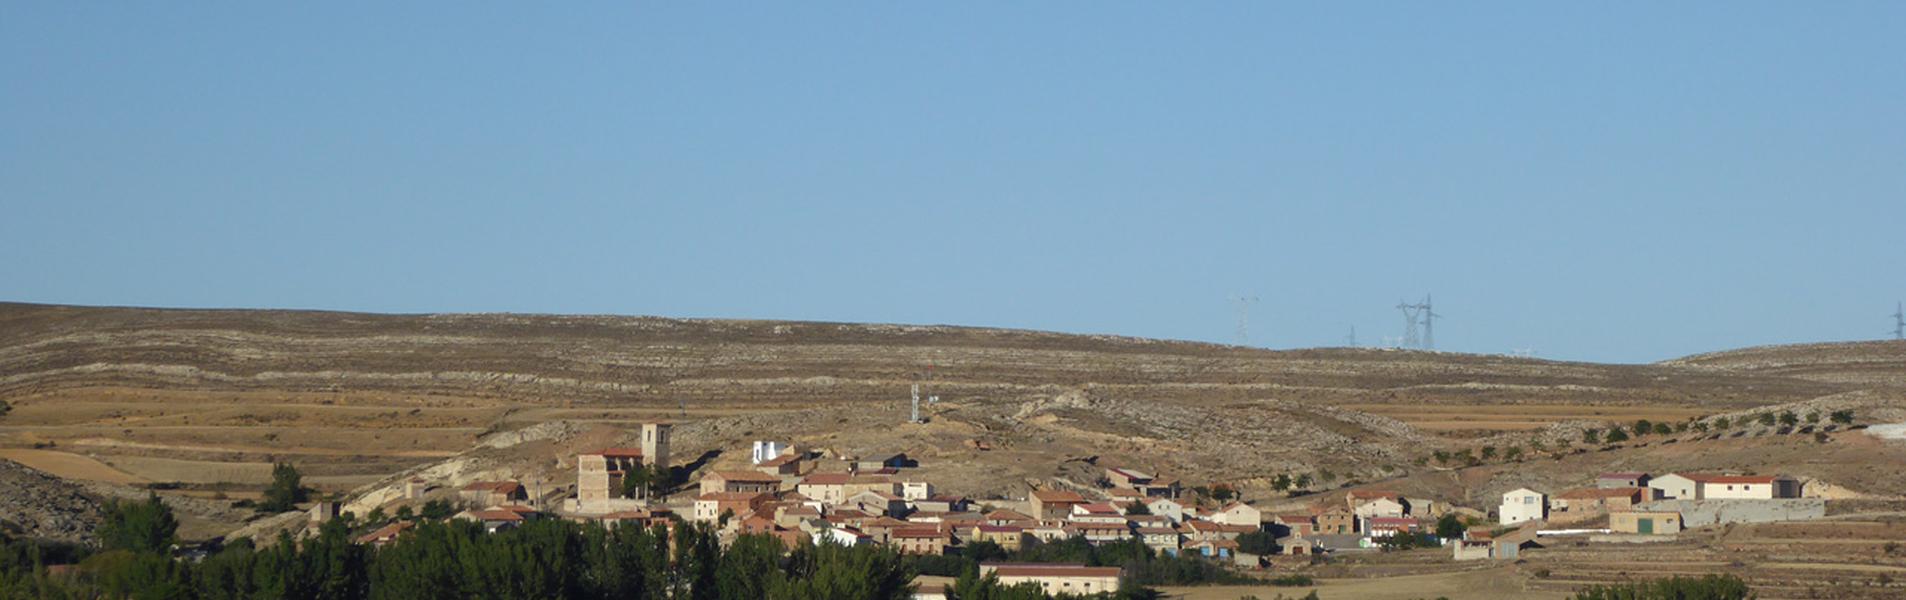 Cañada Vellida